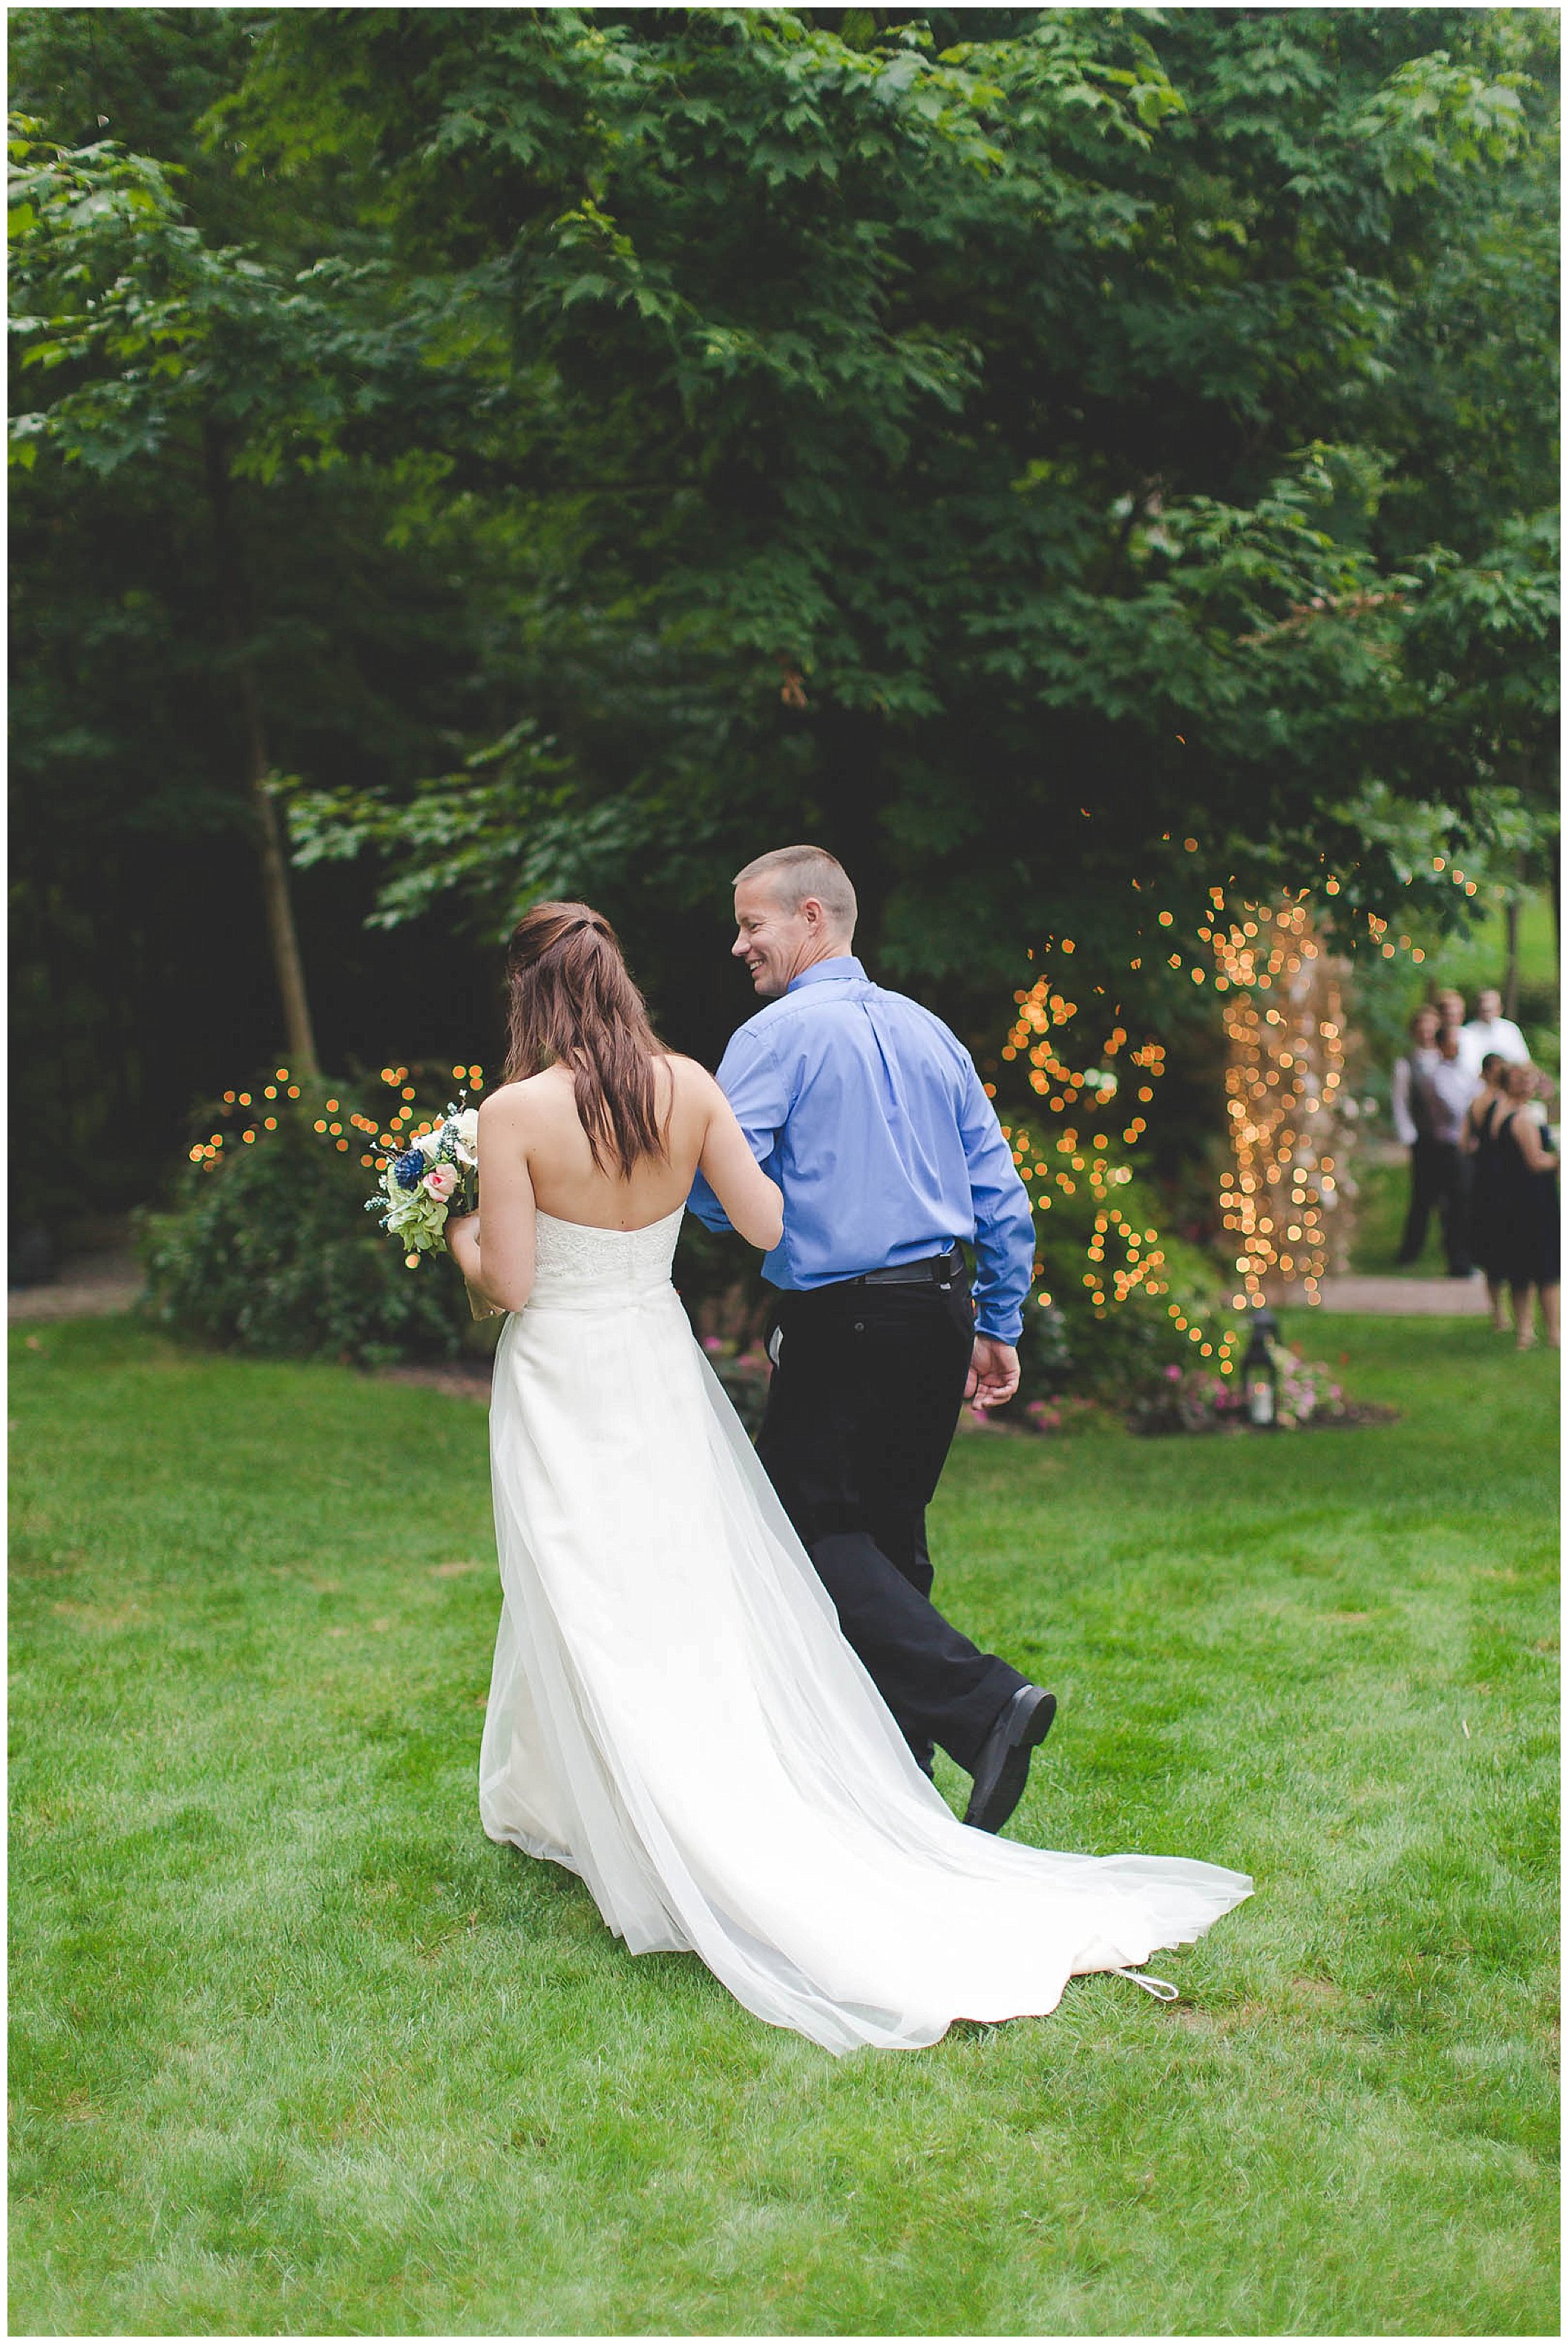 Stunning backyard wedding with twinkly lights, Fort Wayne Indiana Wedding Photographer_0010.jpg